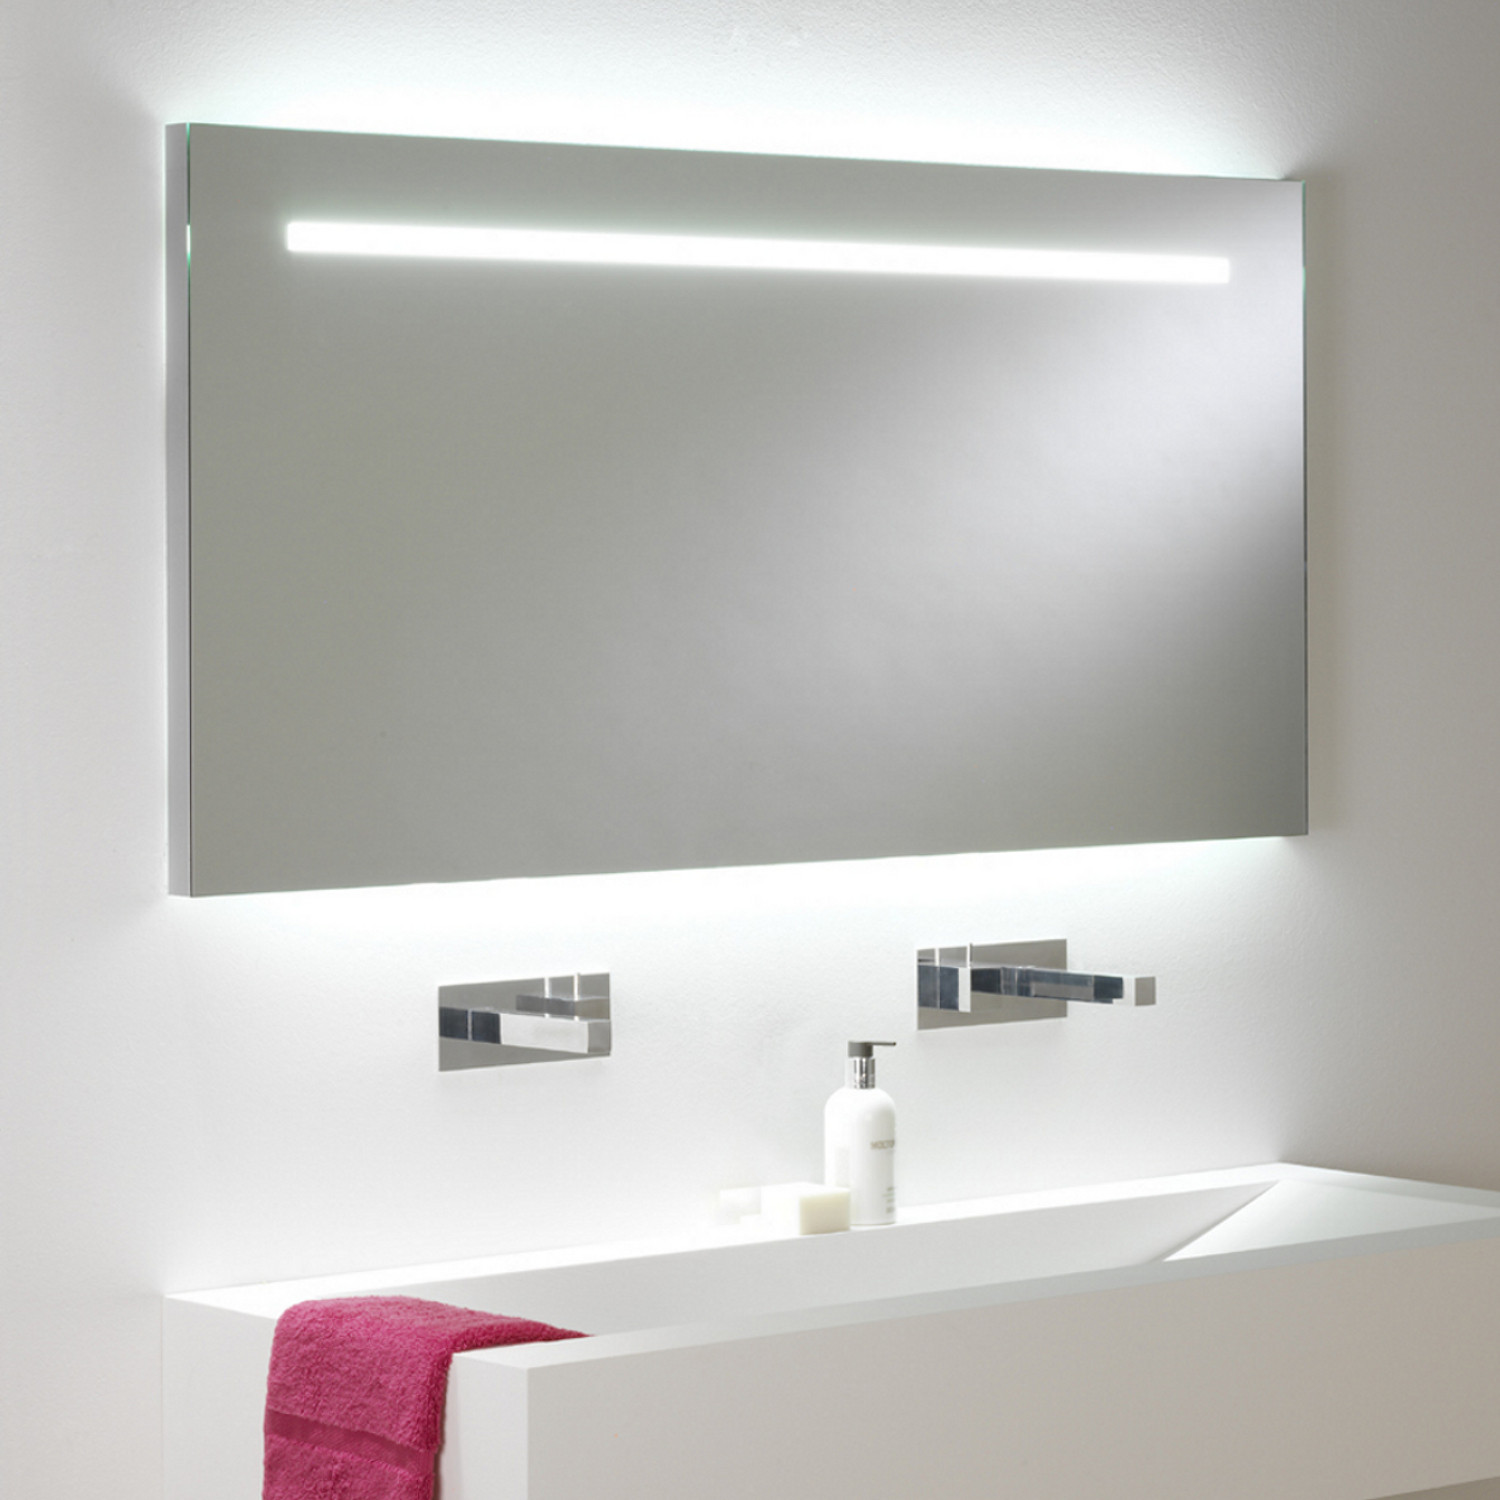 Spiegel Mit Licht
 Großer eindrucksvoller Badspiegel mit Beleuchtung und